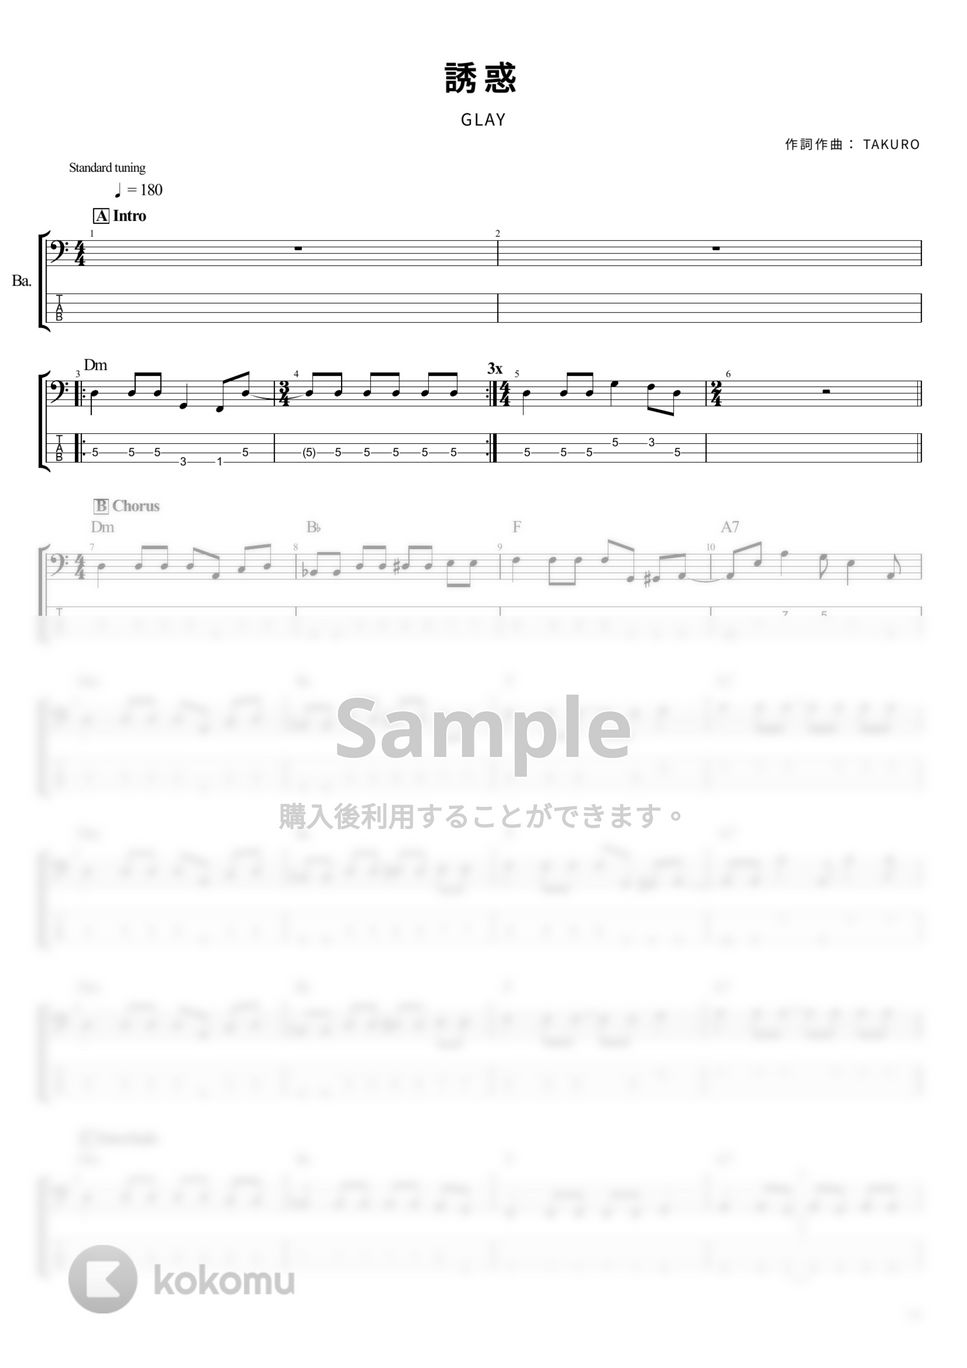 GLAY - 誘惑 (ベース Tab譜 4弦) by T's bass score